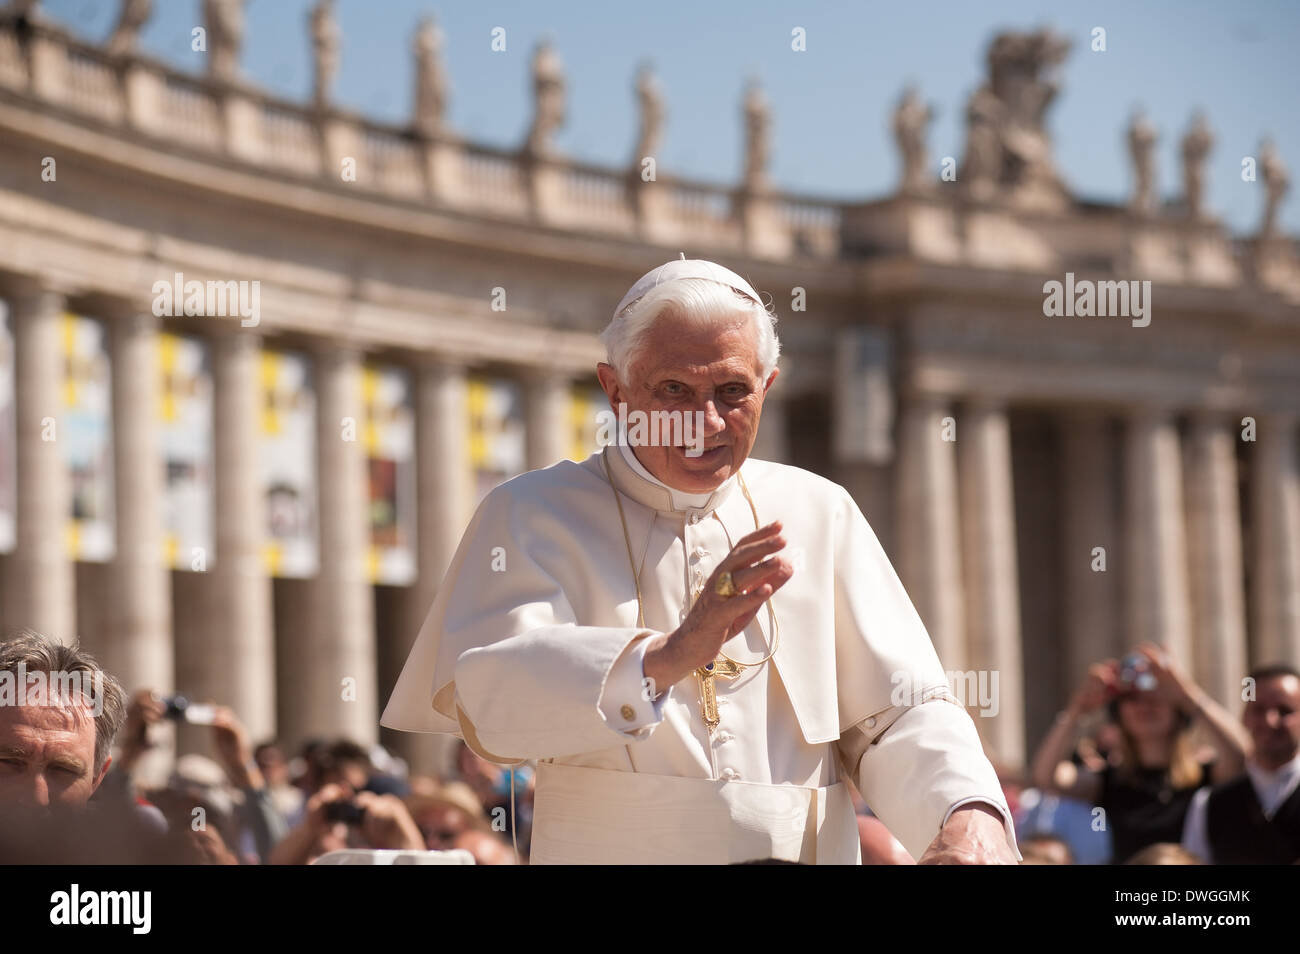 Le pape Benoît XVI salue des gens au cours de son audience hebdomadaire. Banque D'Images